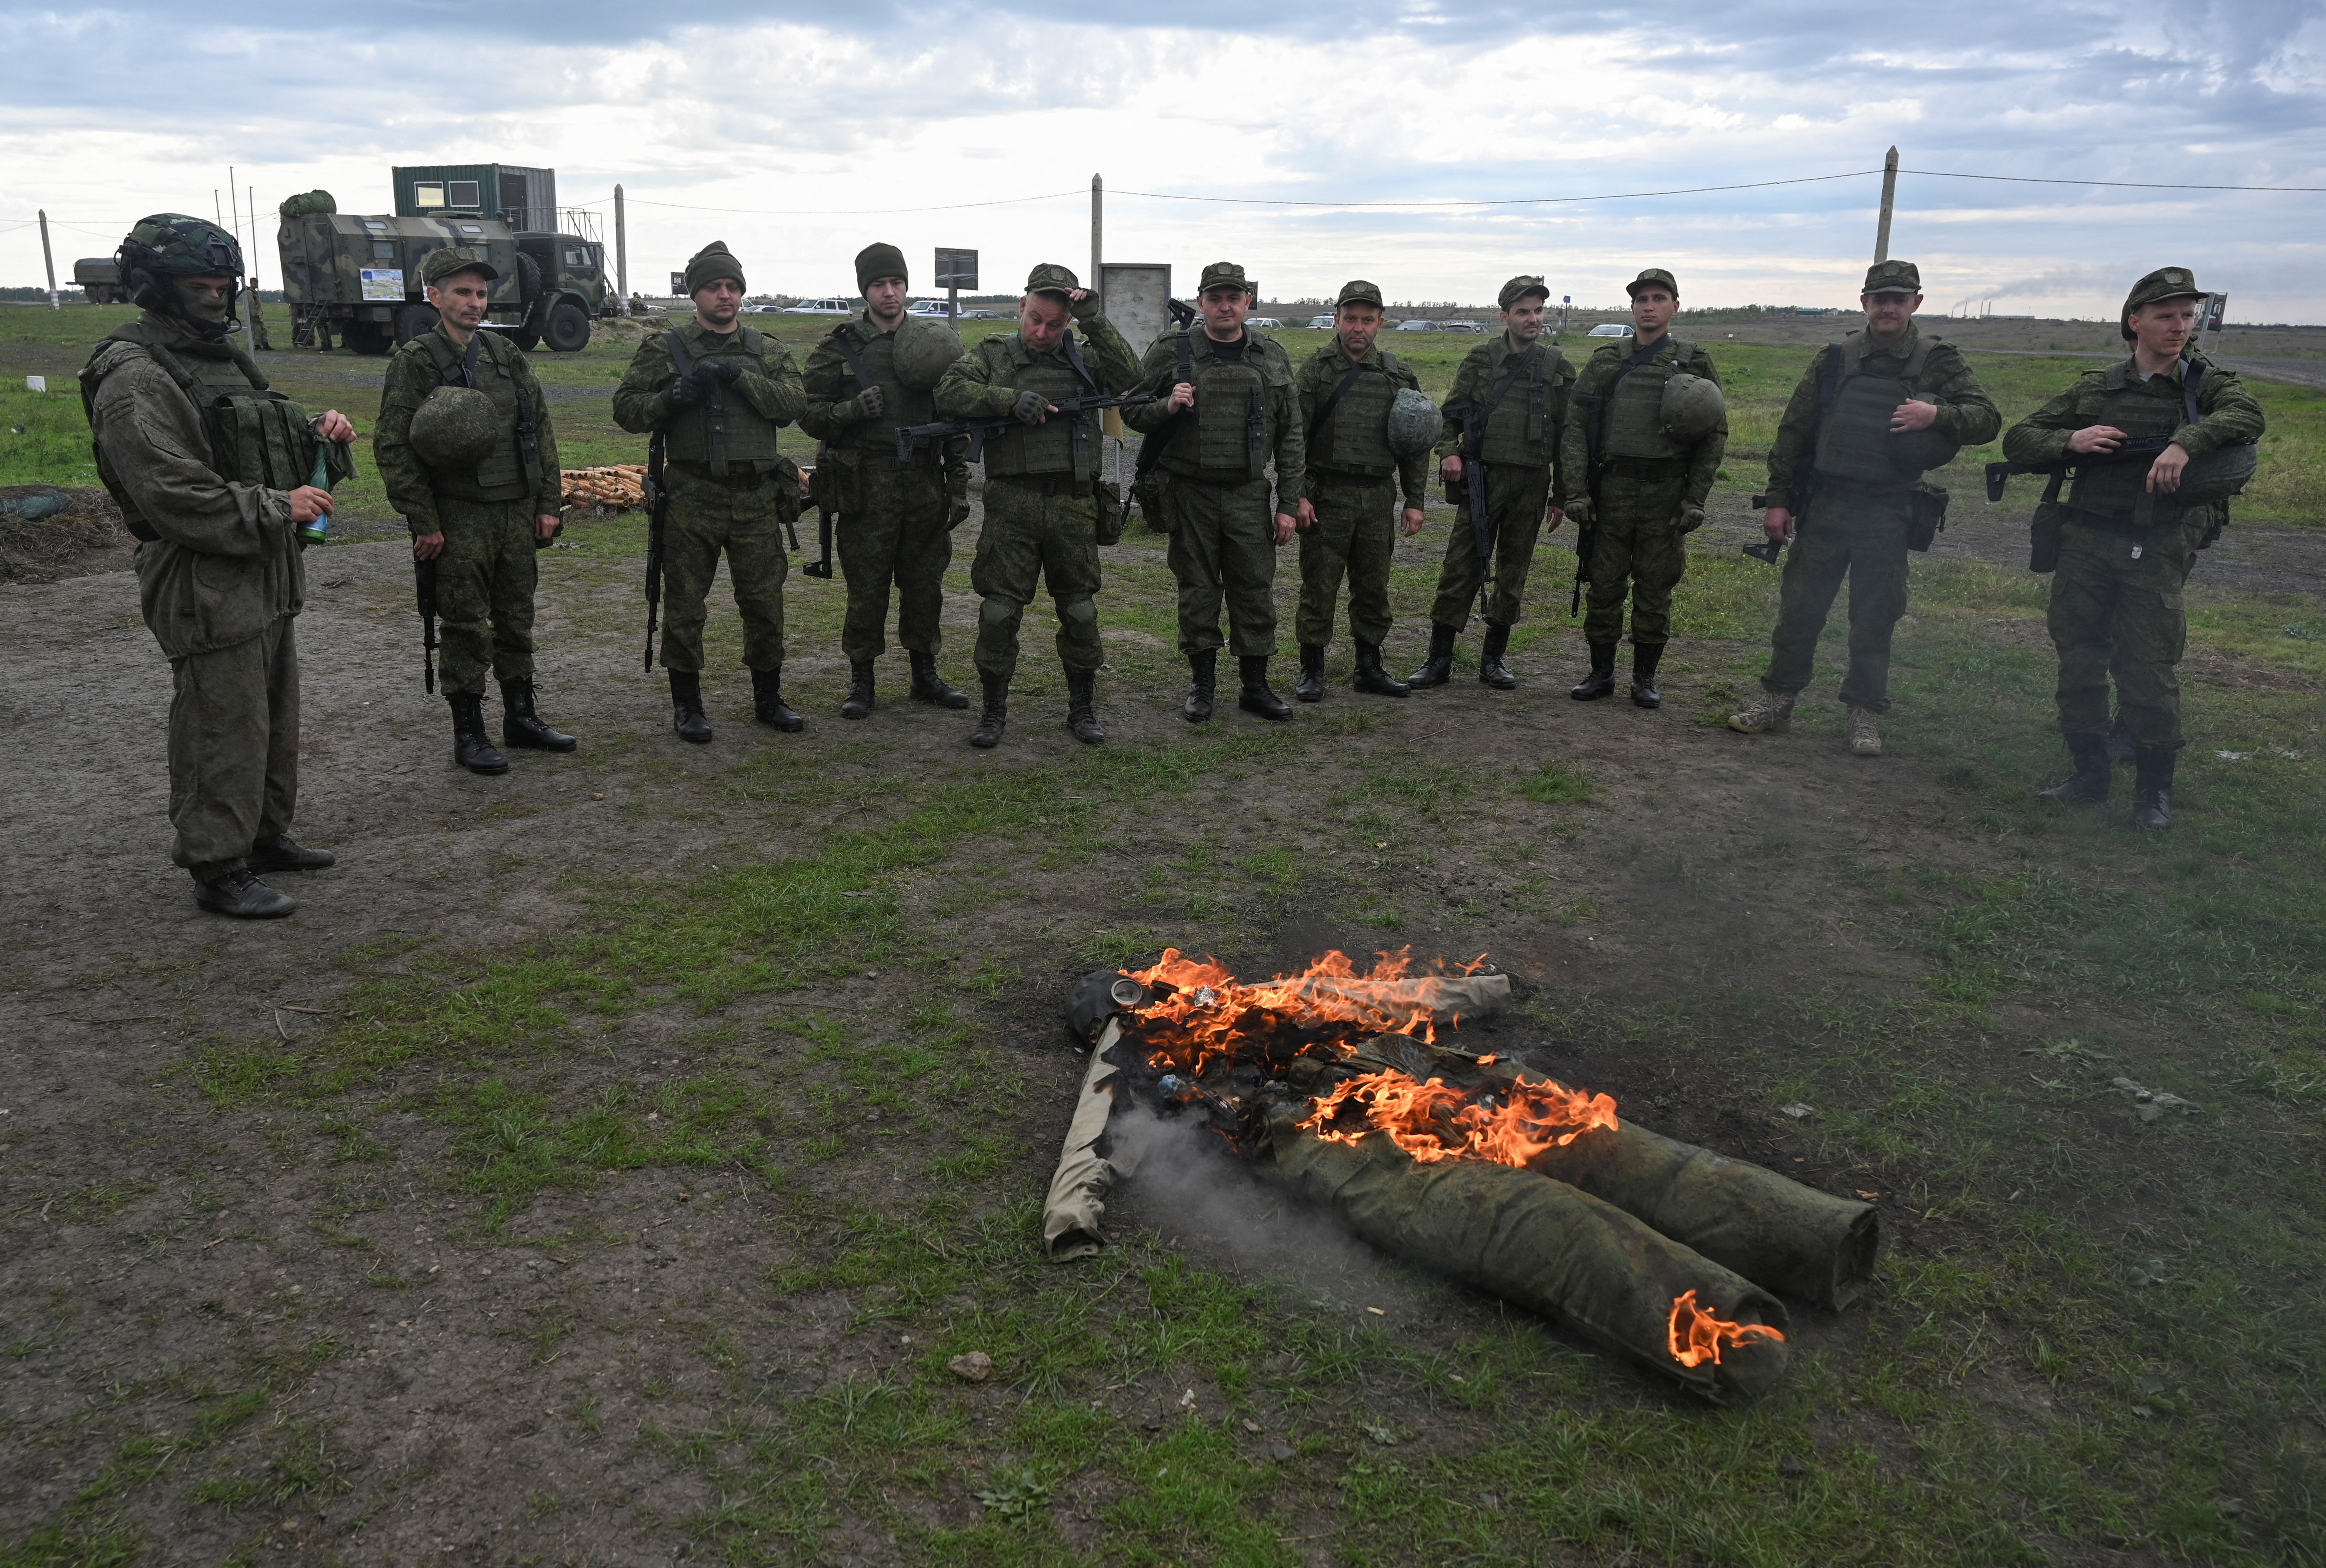 Los nuevos soldados movilizados de Vladimir Putin reciben instrucción militar antes de ser trasladados a Ucrania, en Rostov, Rusia, este 4 de octubre (Reuters)